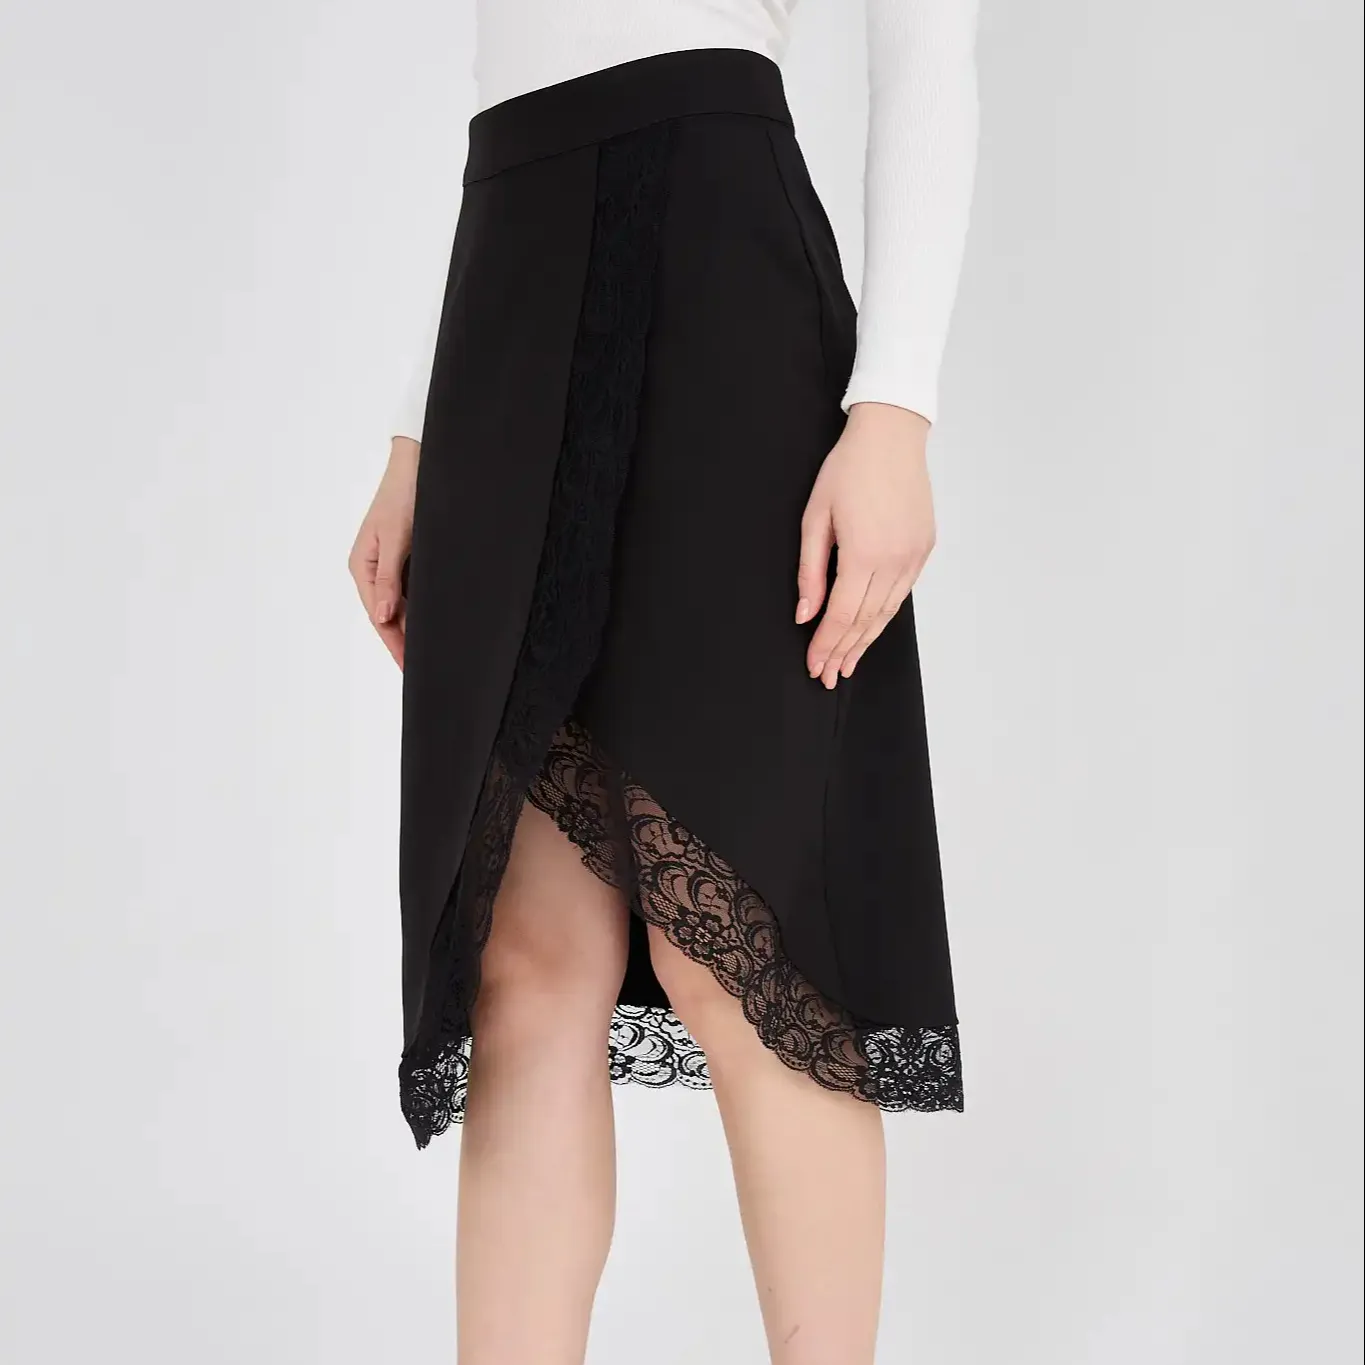 Falda MIDI con detalles de encaje negro para mujer, faldas de longitud MIDI, falda larga, cremallera elegante de color negro detallada para mujer